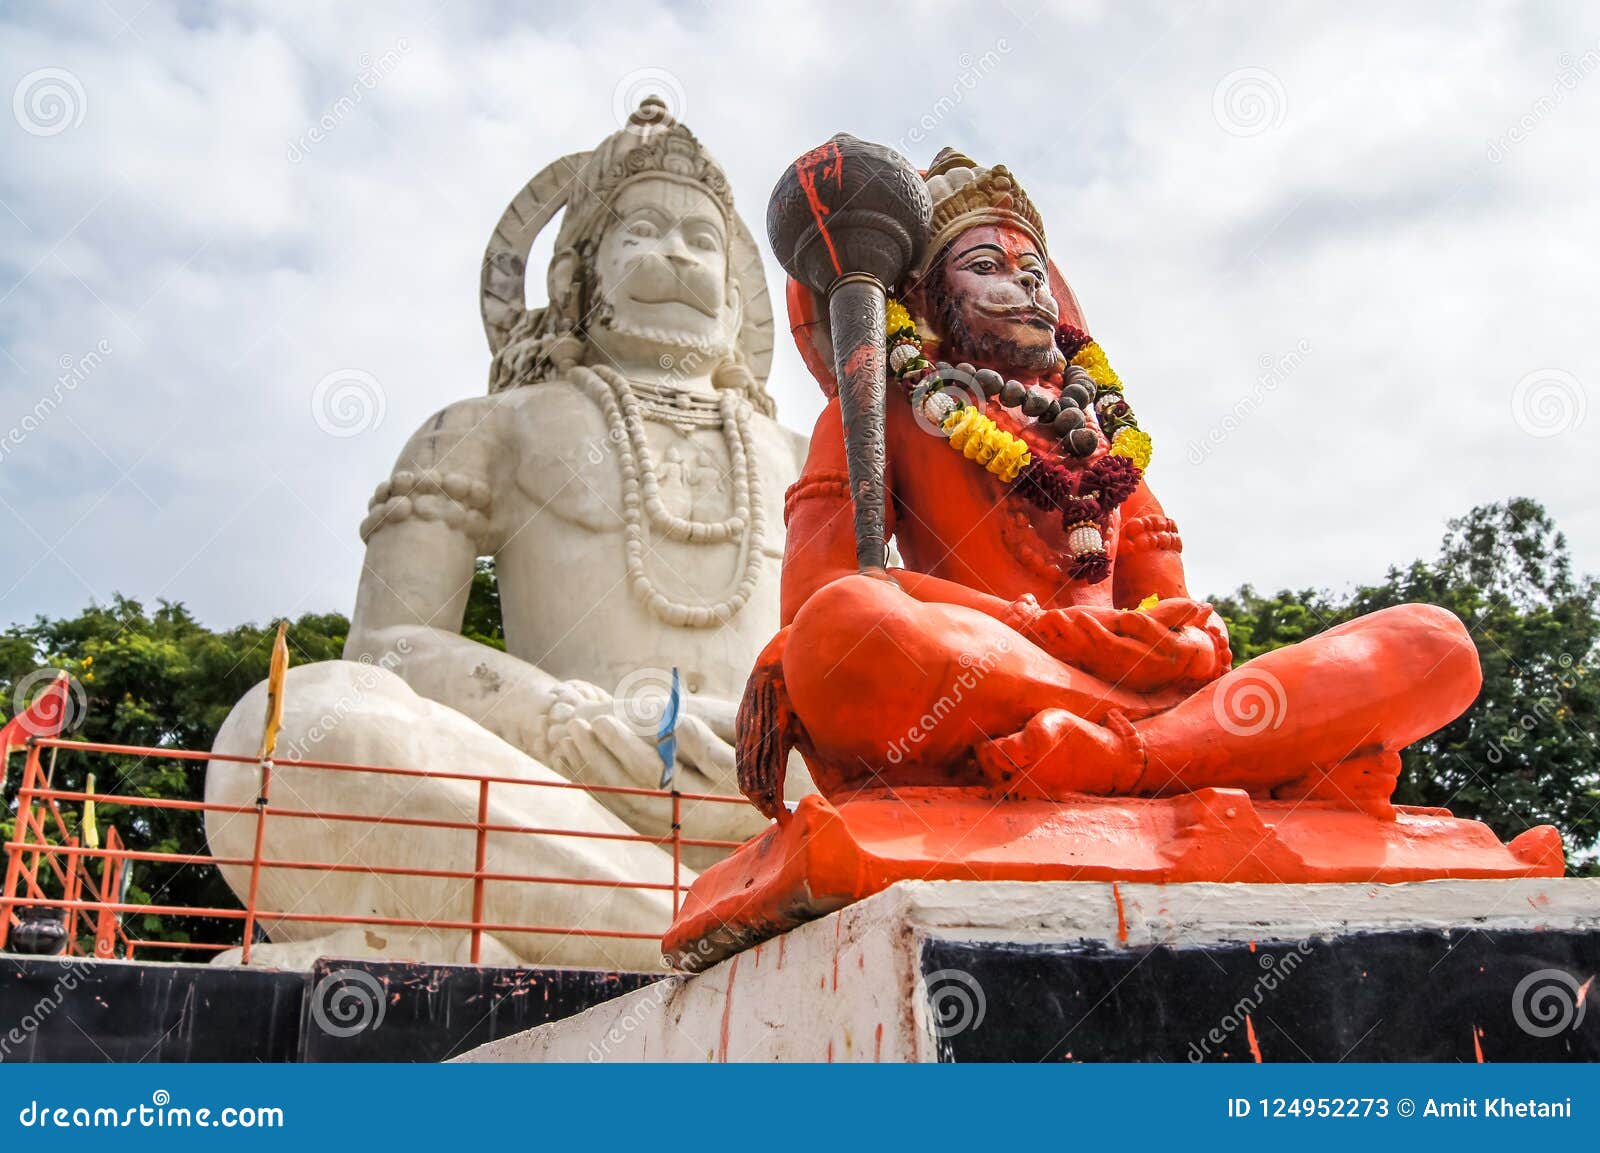 Hindu God Hanuman Idol, Huge Statue of Indian Lord Hanuman ...